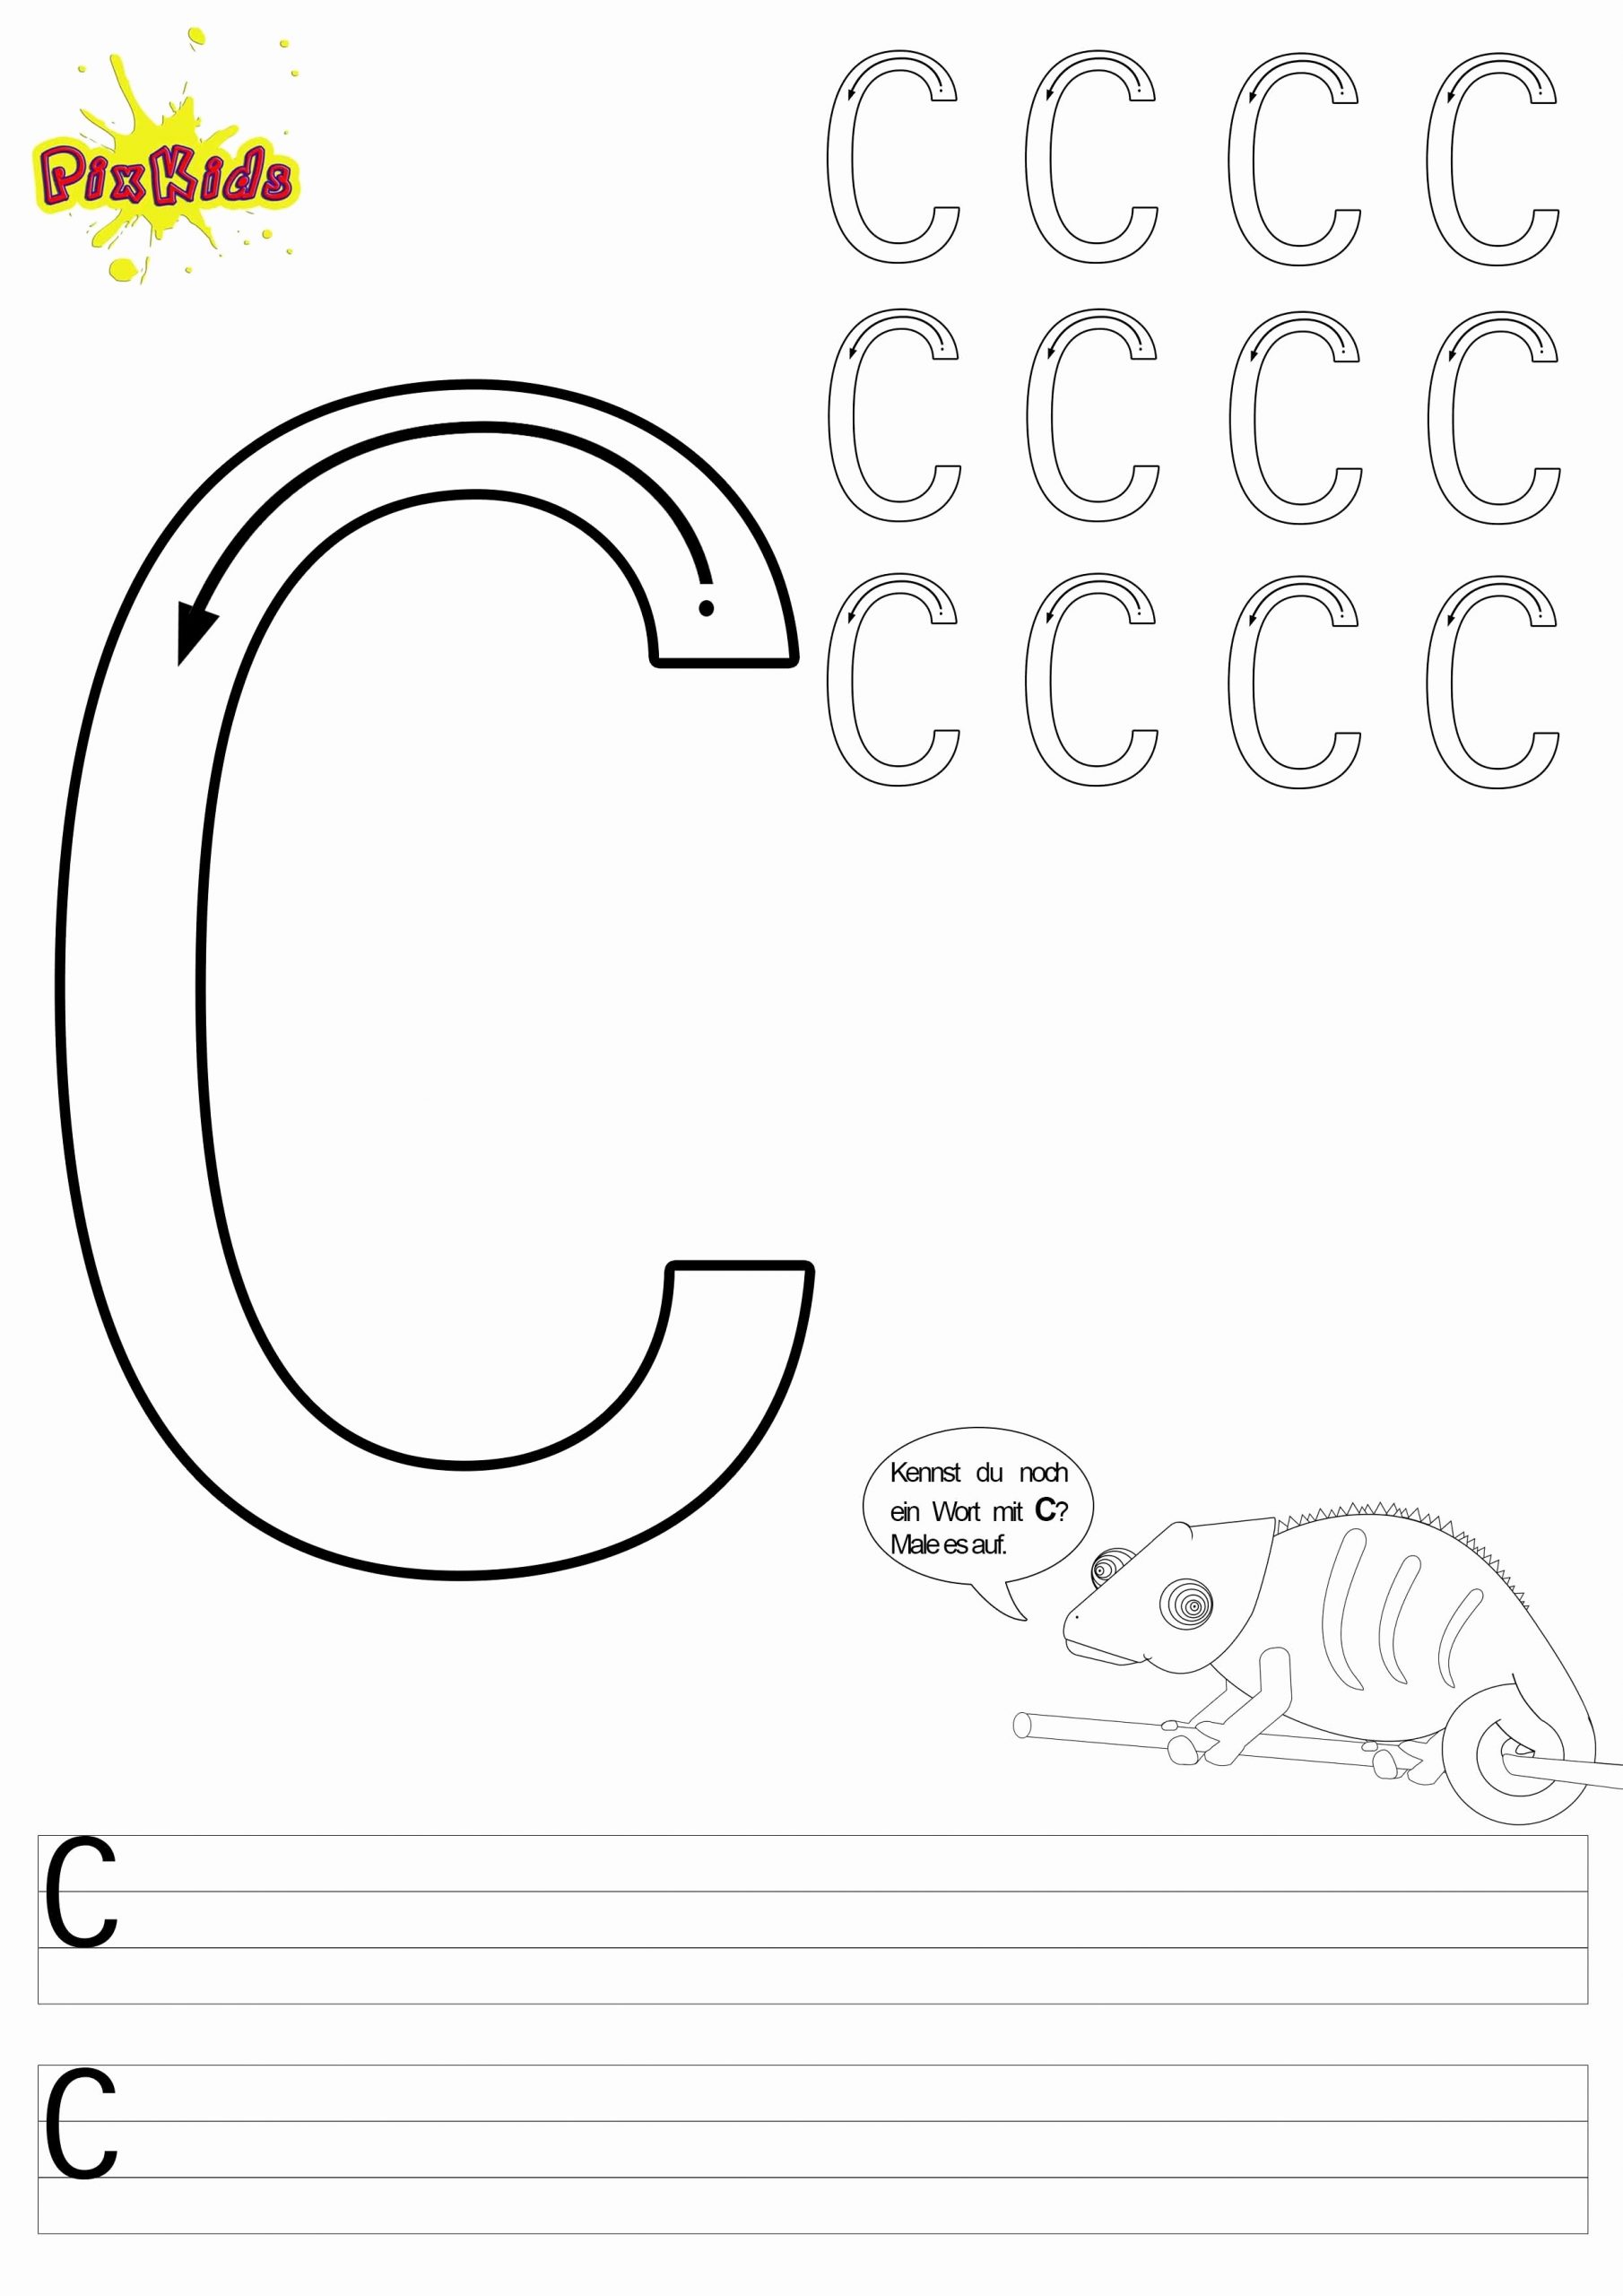 35 Einzigartig Bilder Von Buchstabenschablone Zum Ausdrucken verwandt mit Buchstabenschablone Zum Ausdrucken